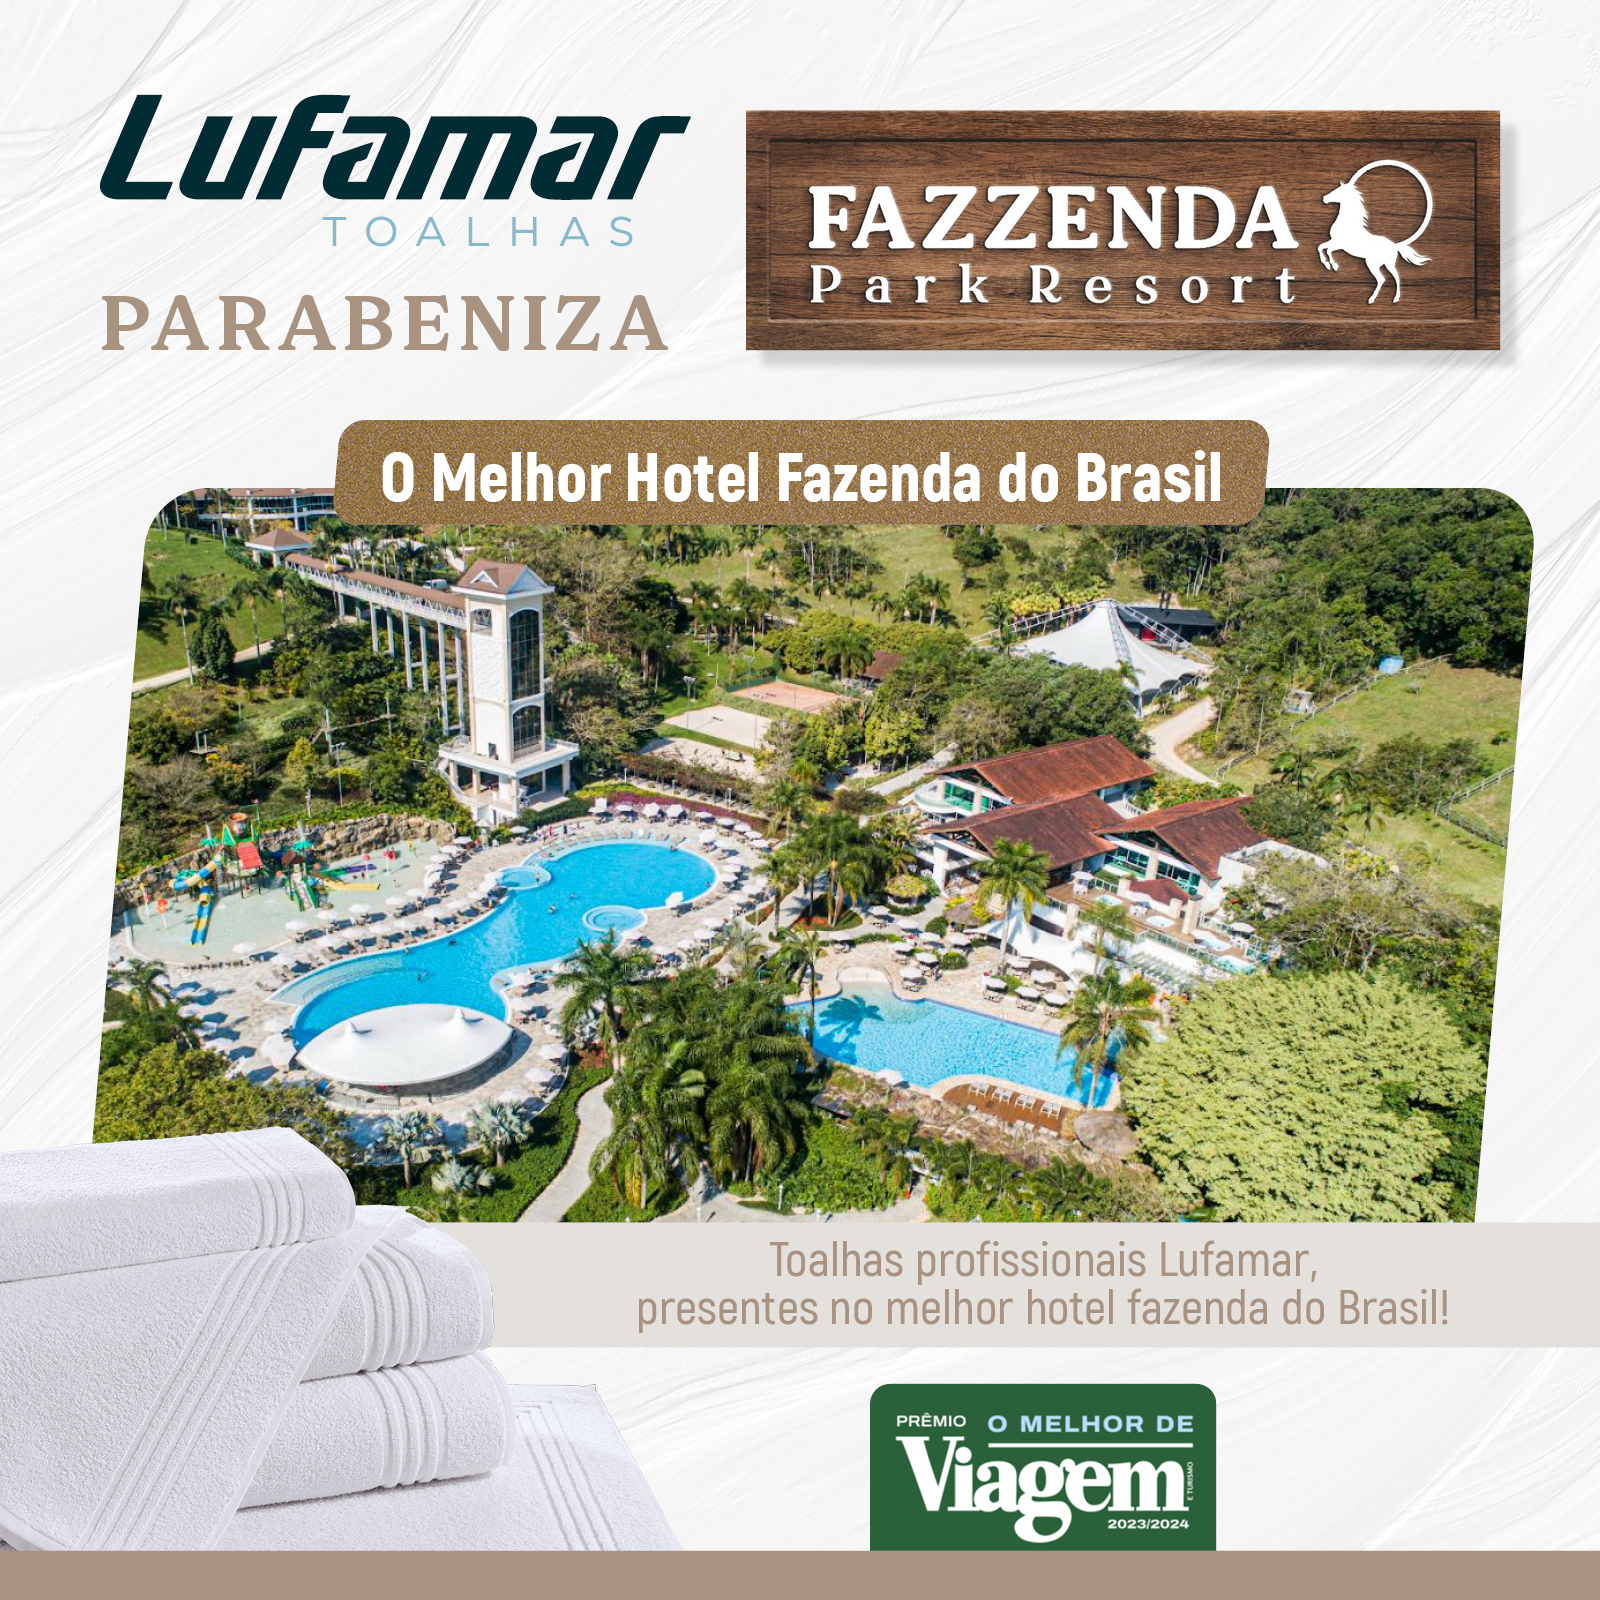 Fazzenda Park Resort eleito melhor Hotel Fazenda do Brasil